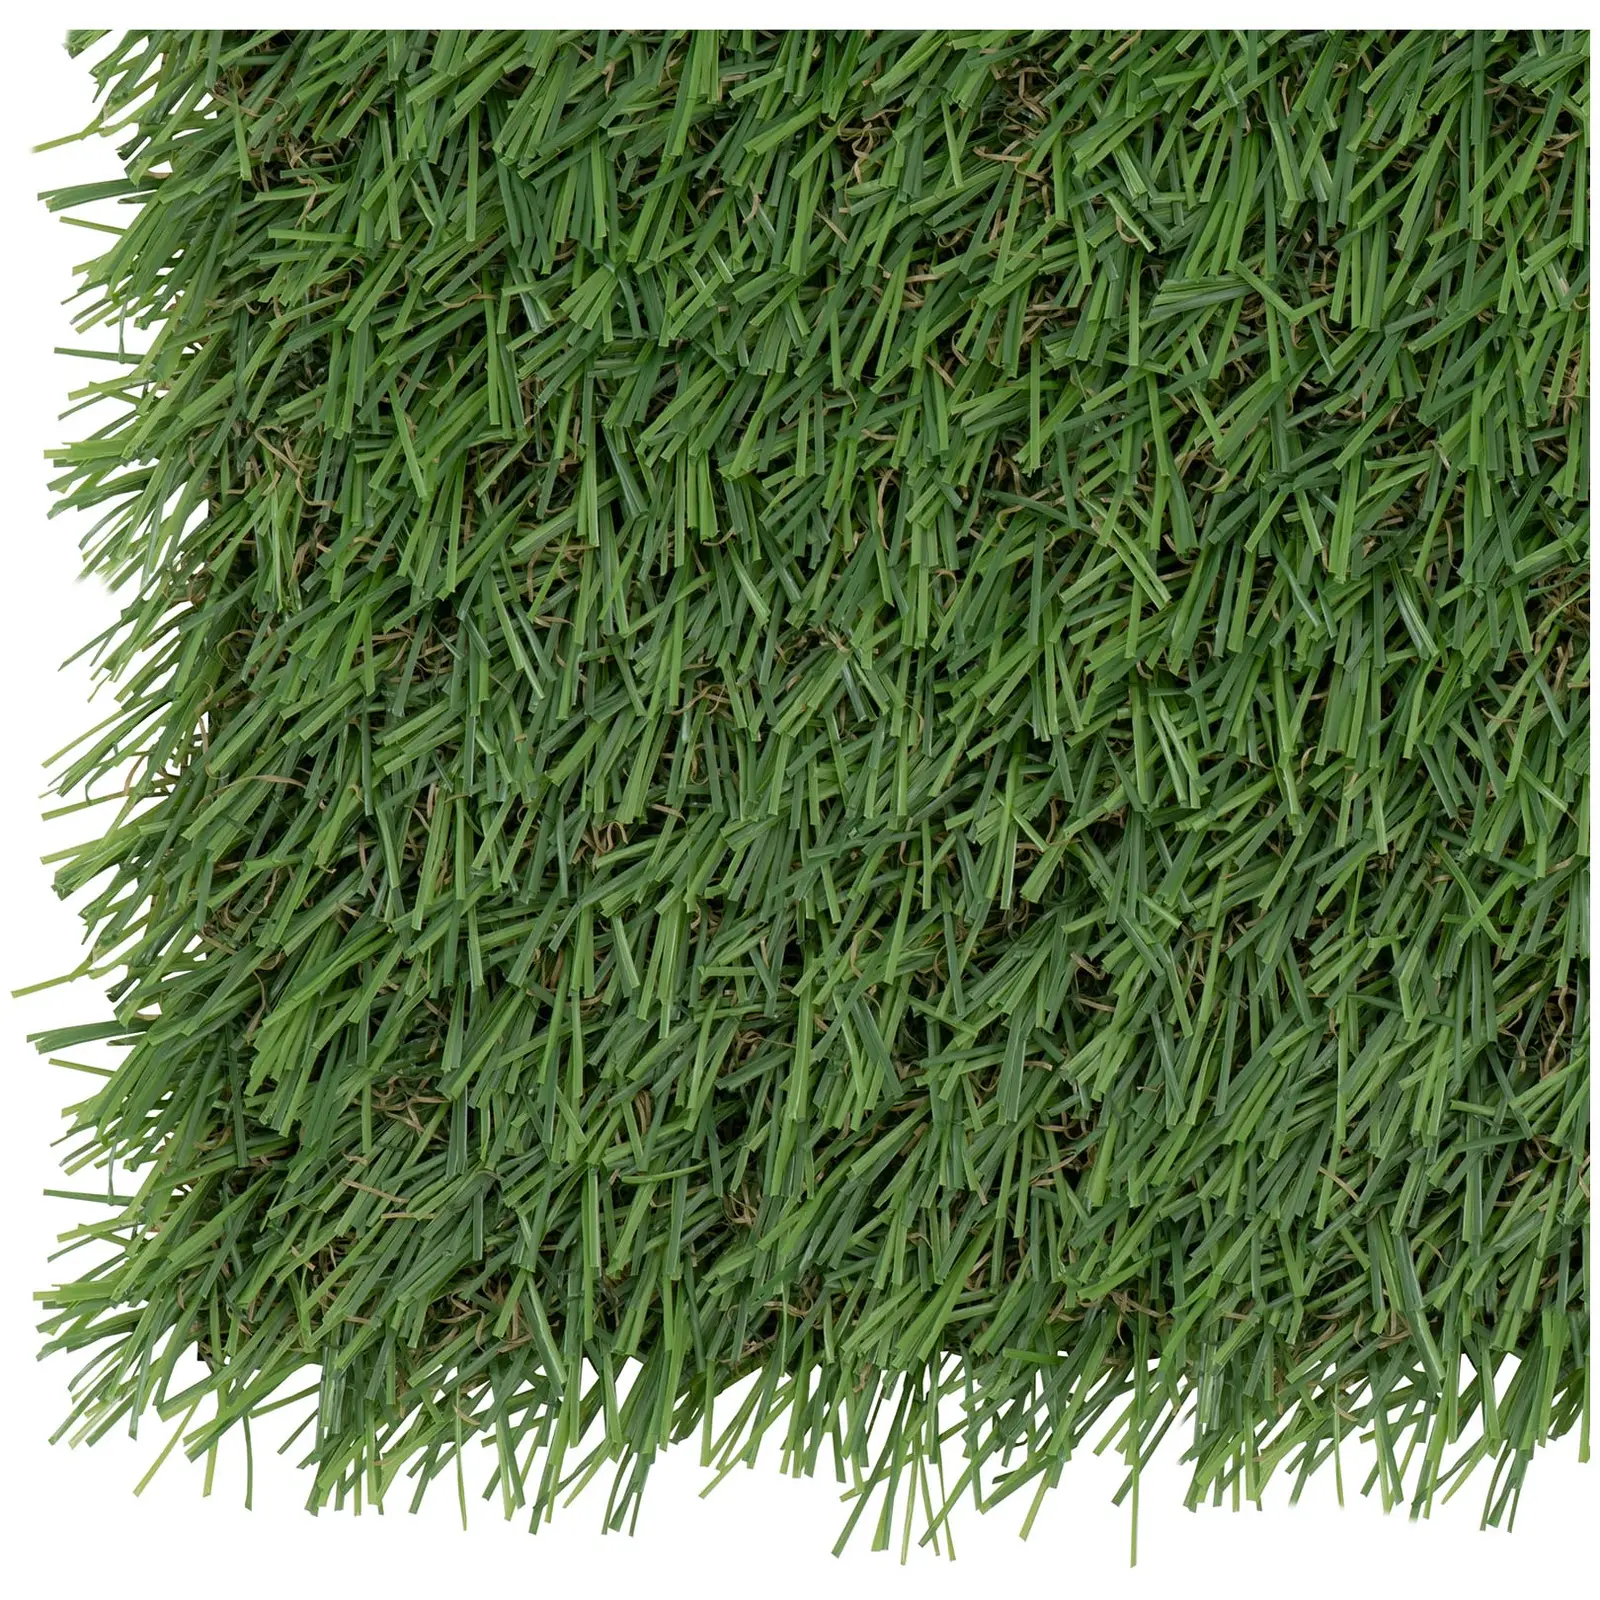 Sztuczna trawa - 403 x 200 cm - wysokość: 20 mm - szybkość ściegu: 13/10 cm - odporność na promieniowanie UV